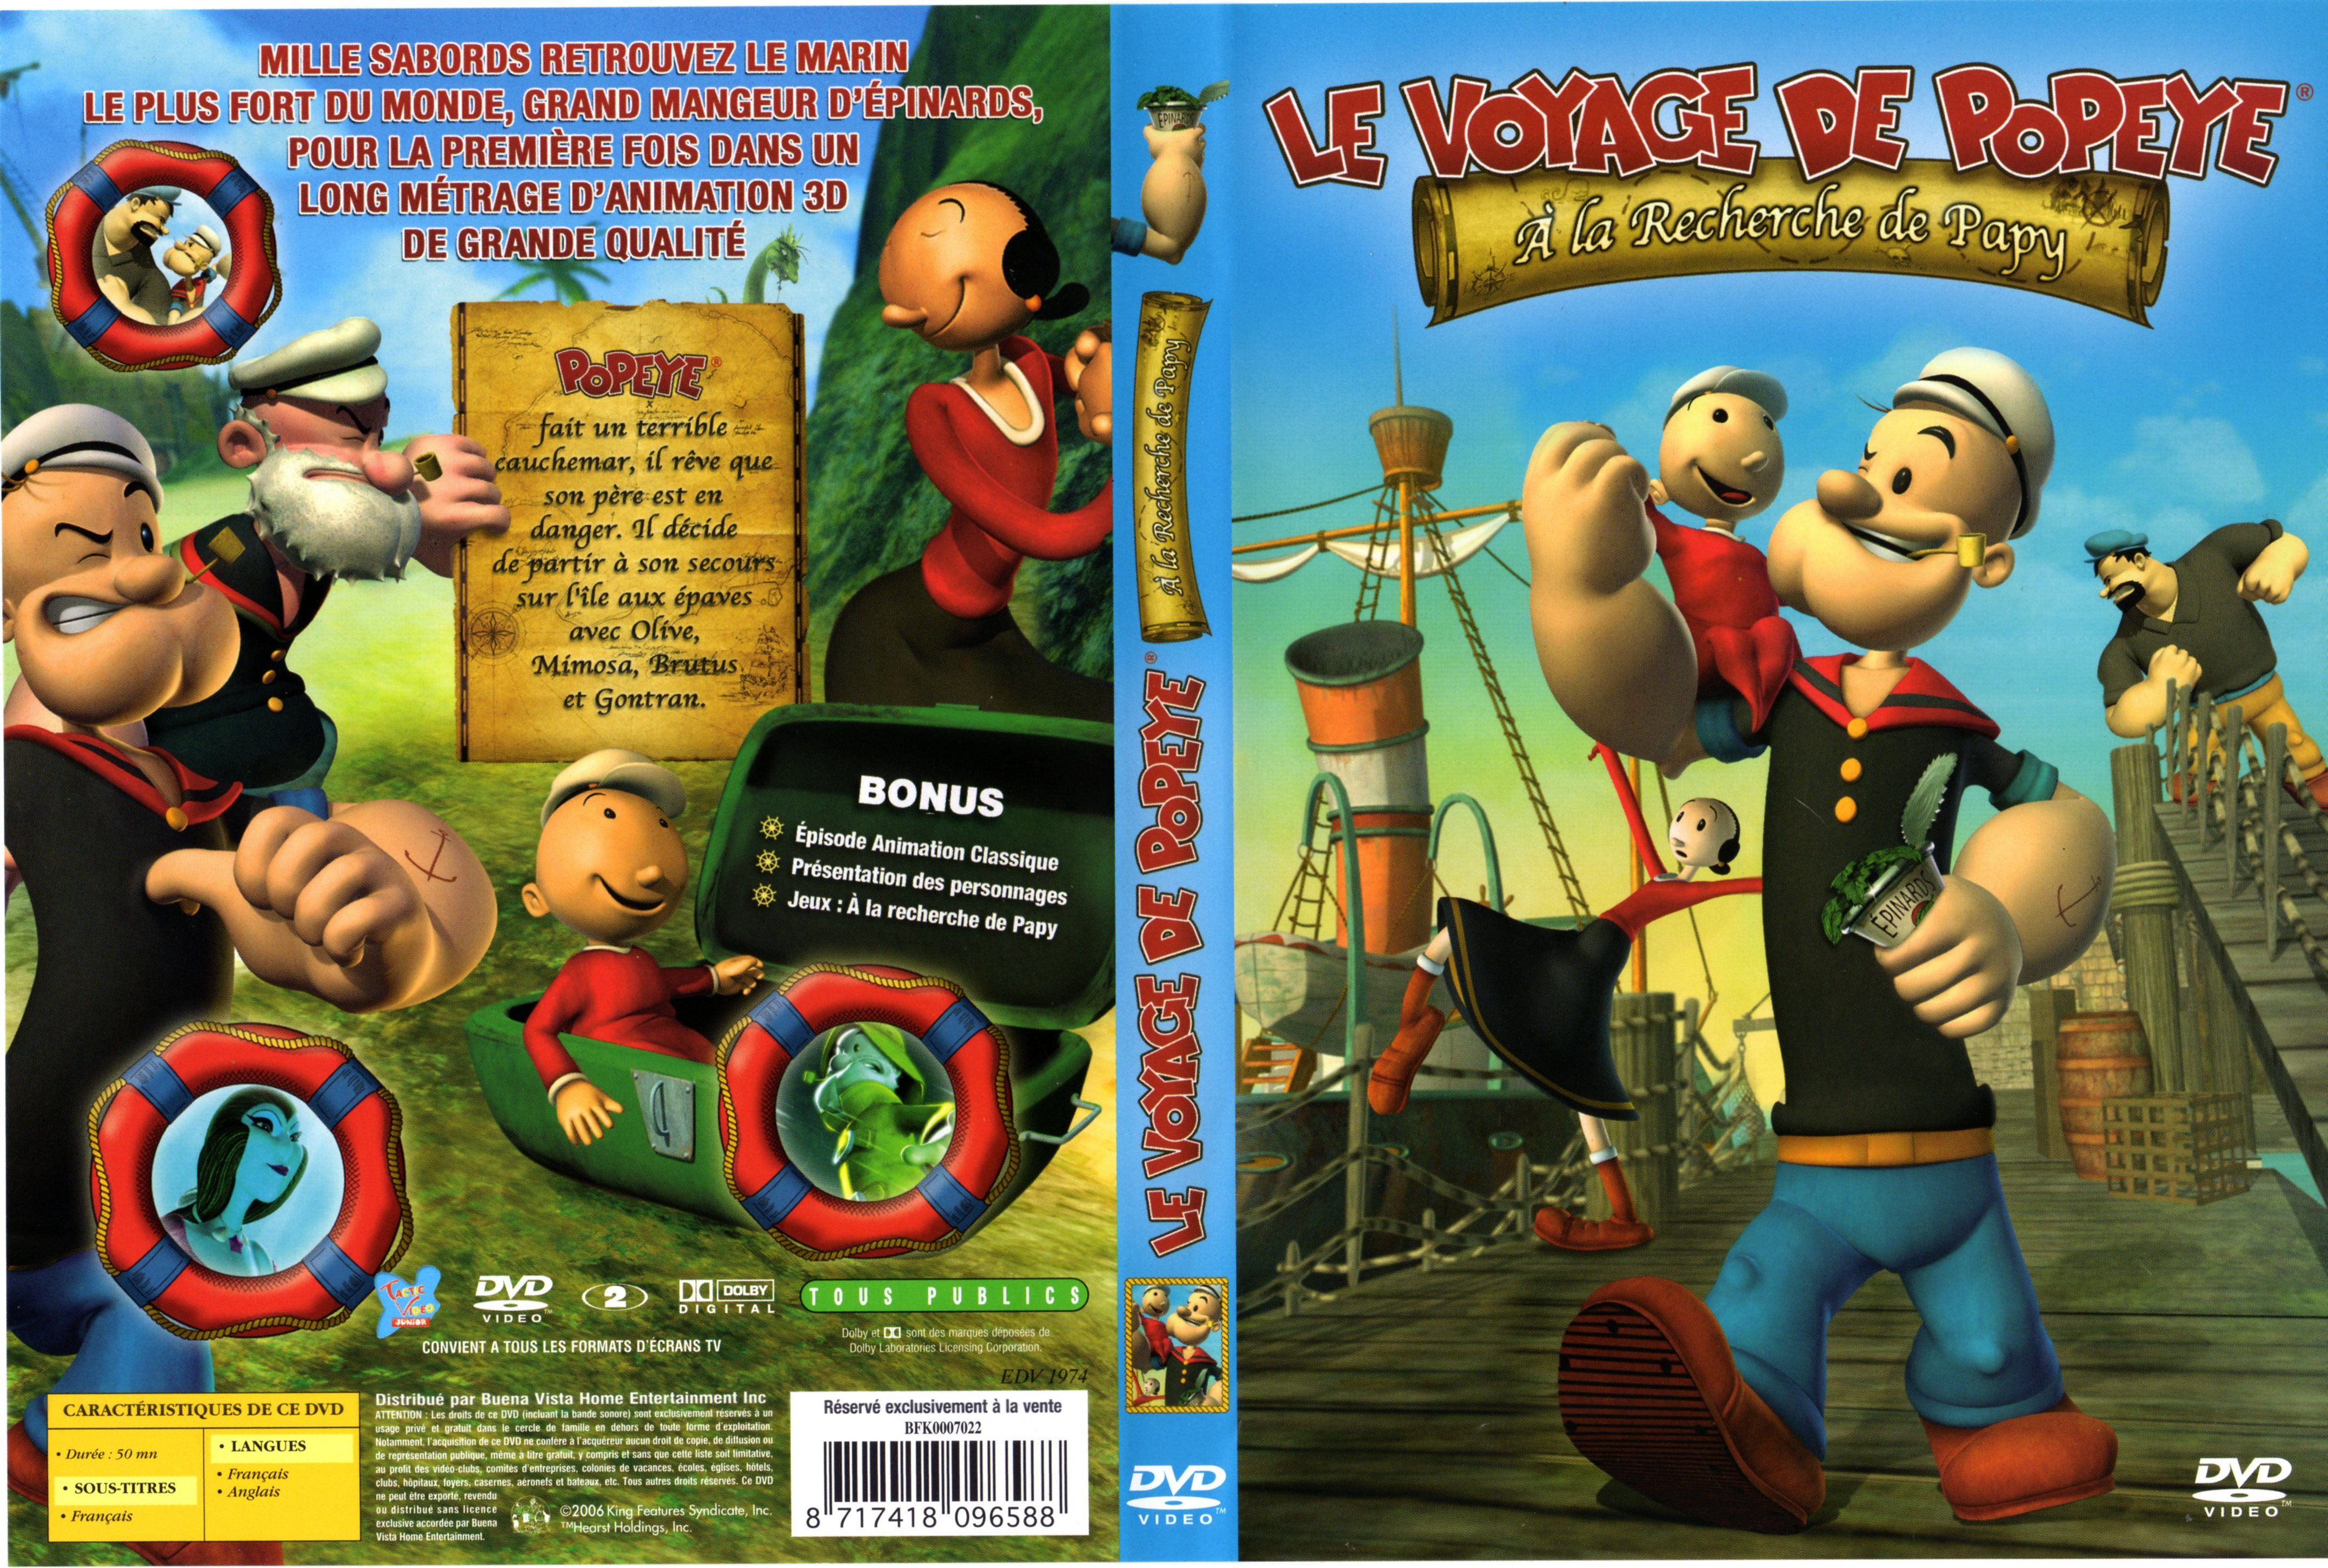 Jaquette DVD Le voyage de Popeye - A la recherche de papy